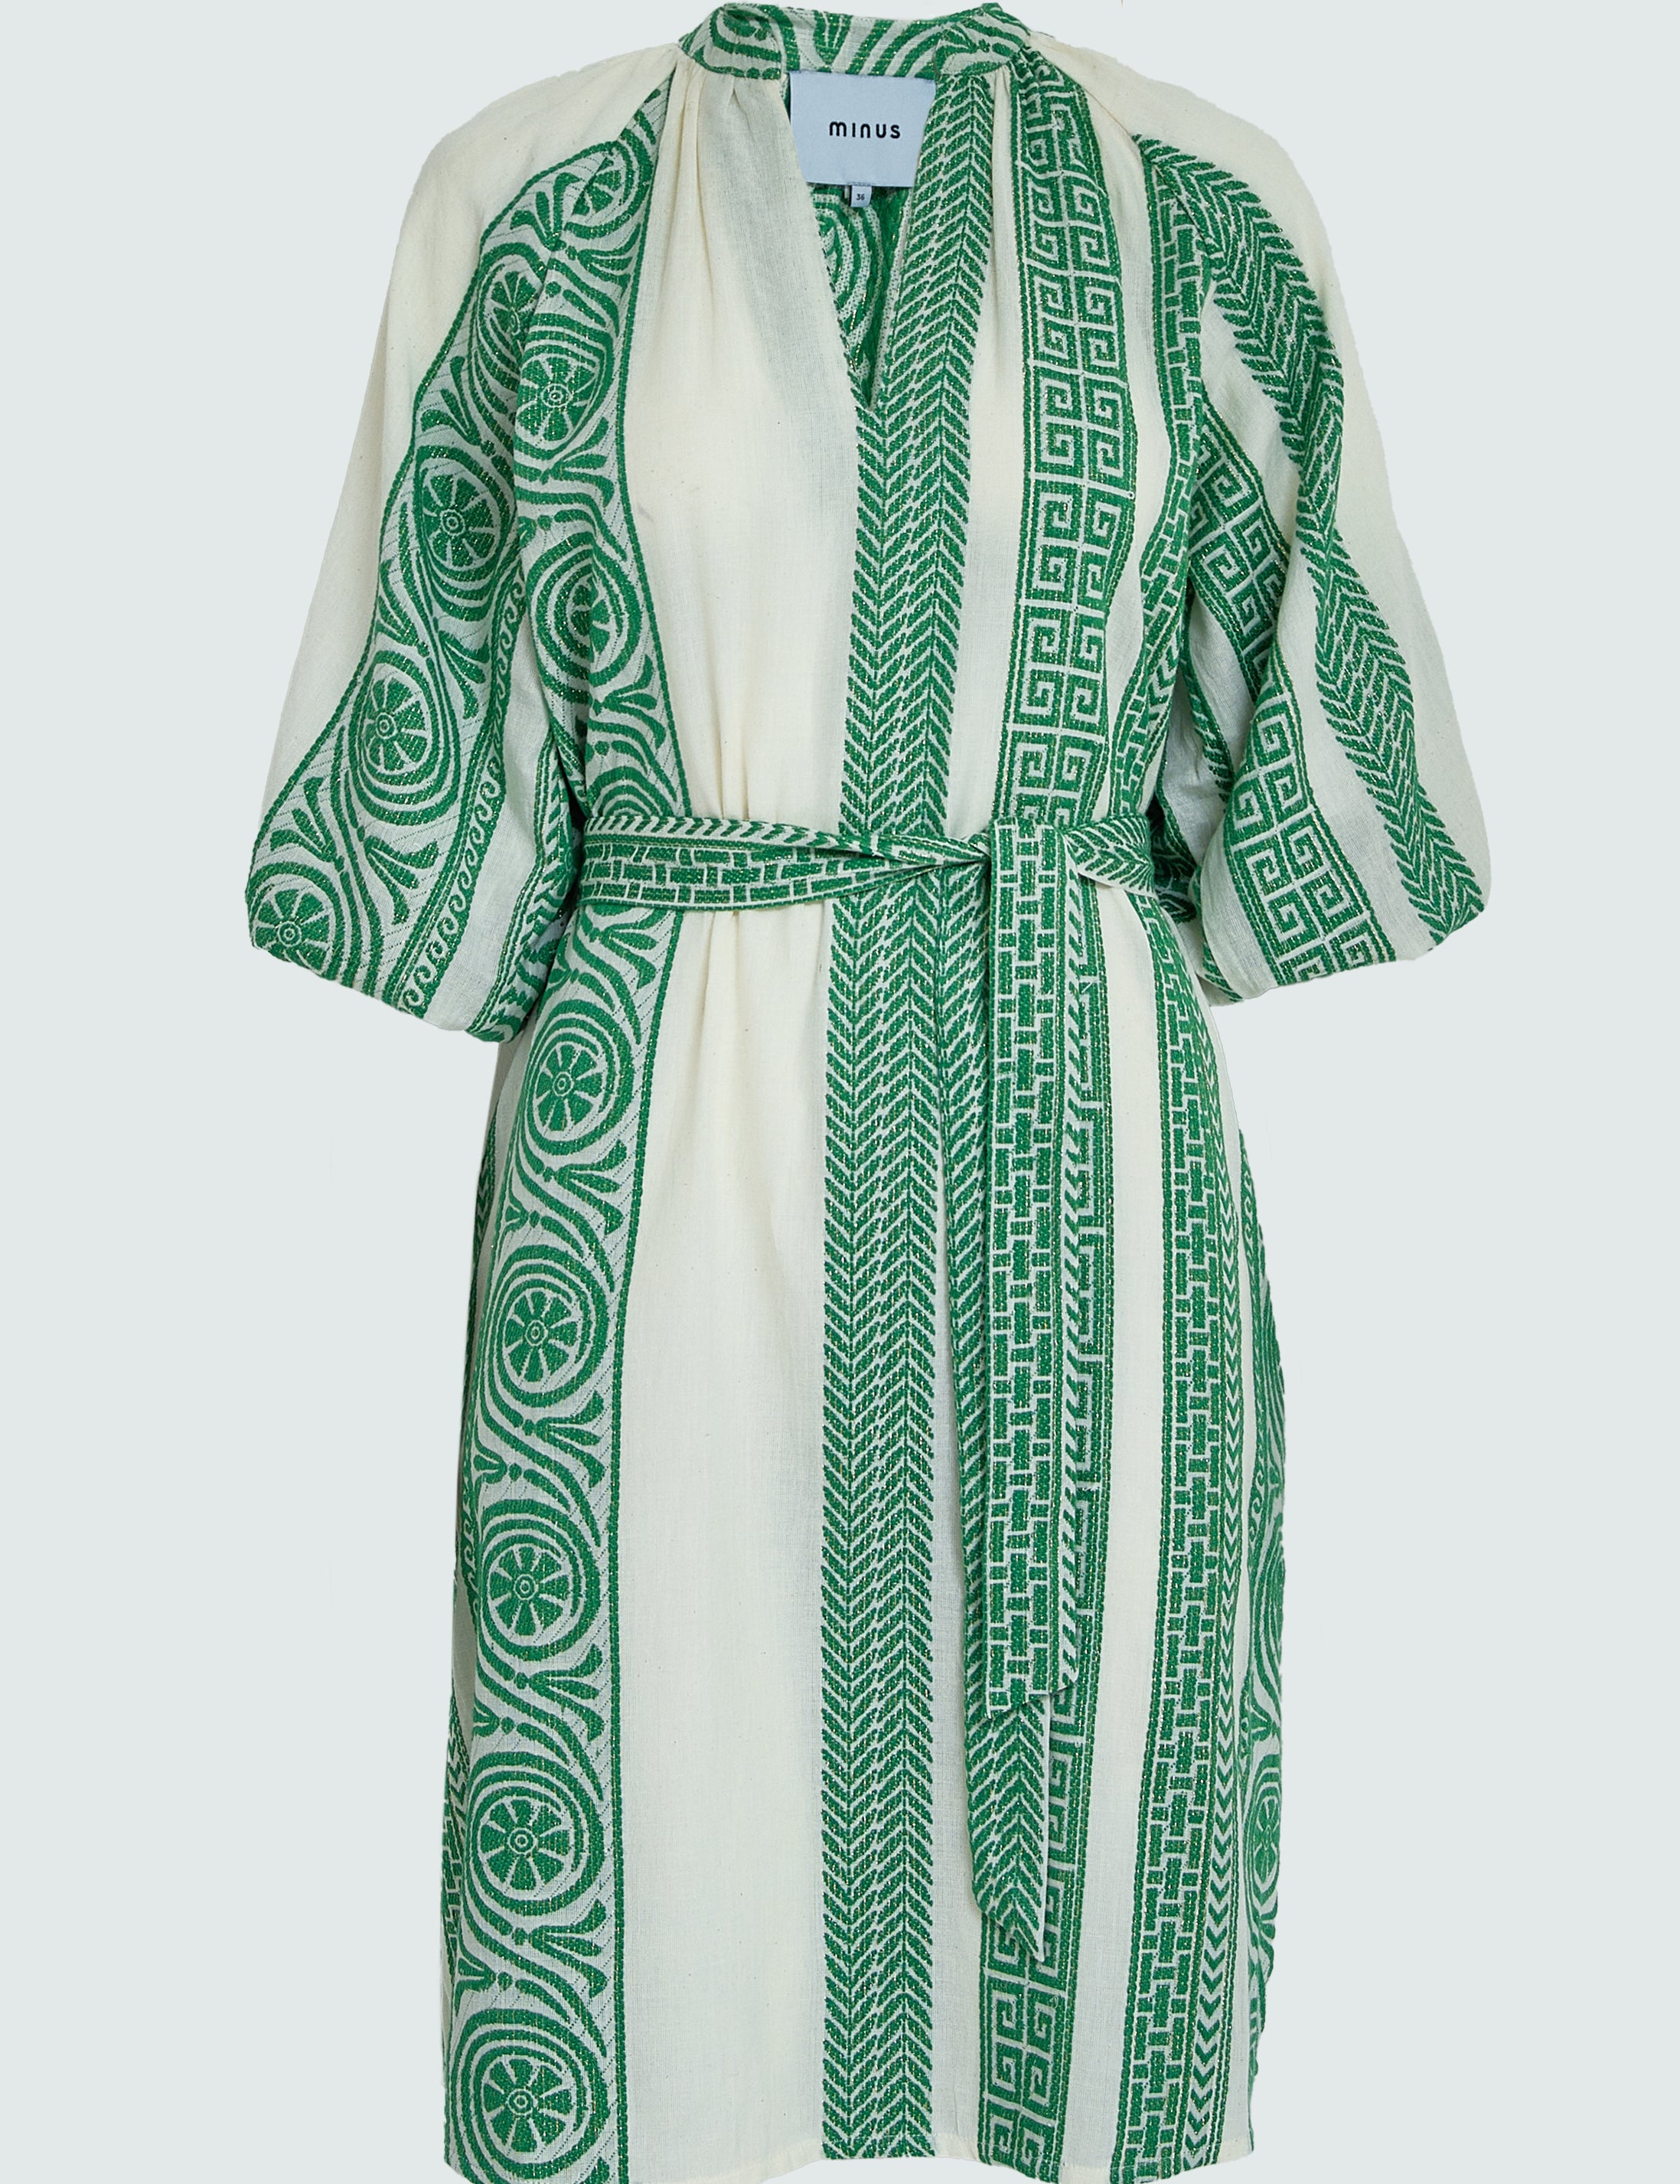 Minus MSMerilla Short Dress Dress 3201 Palm Green